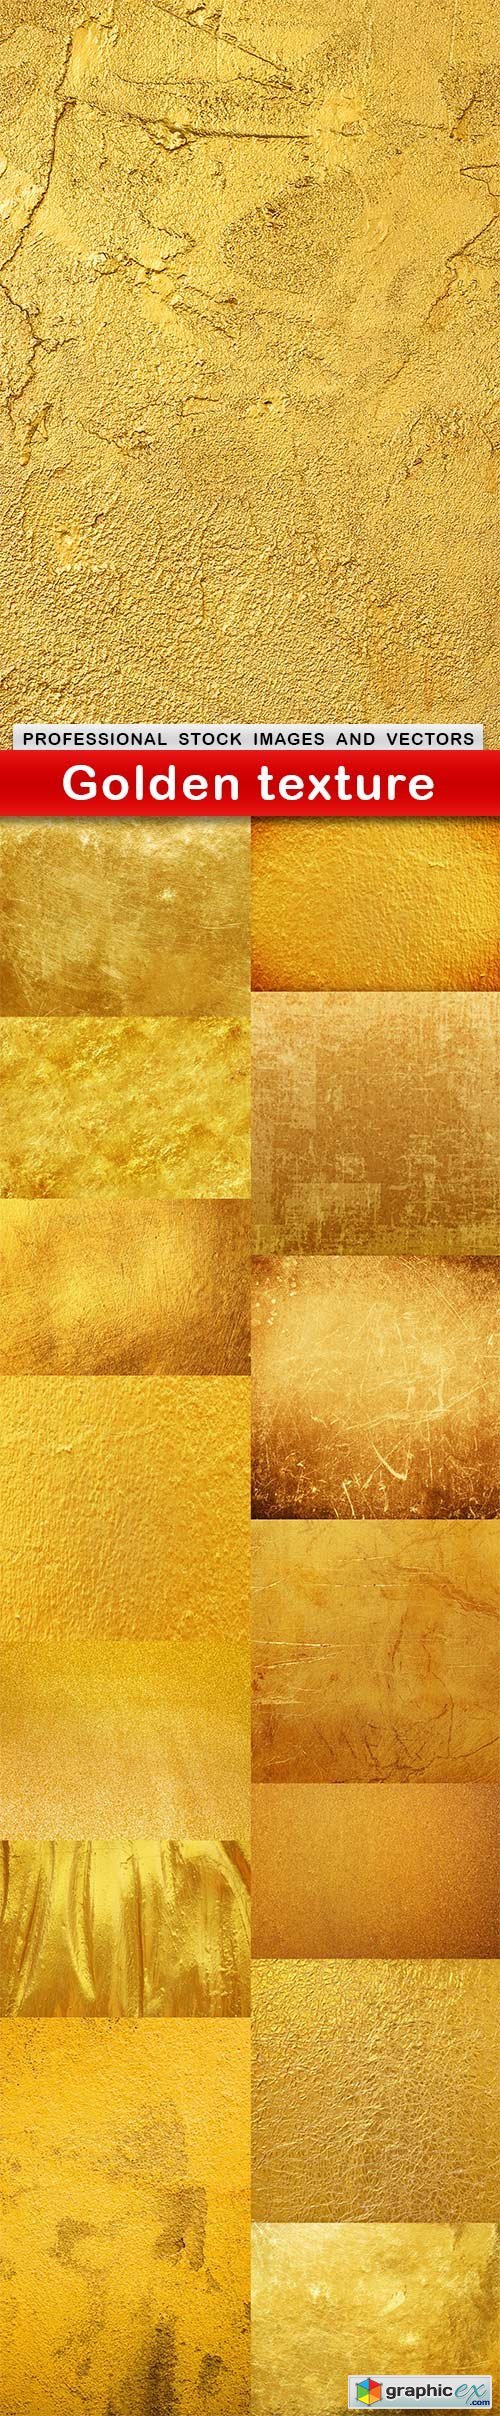 Golden texture - 15 UHQ JPEG